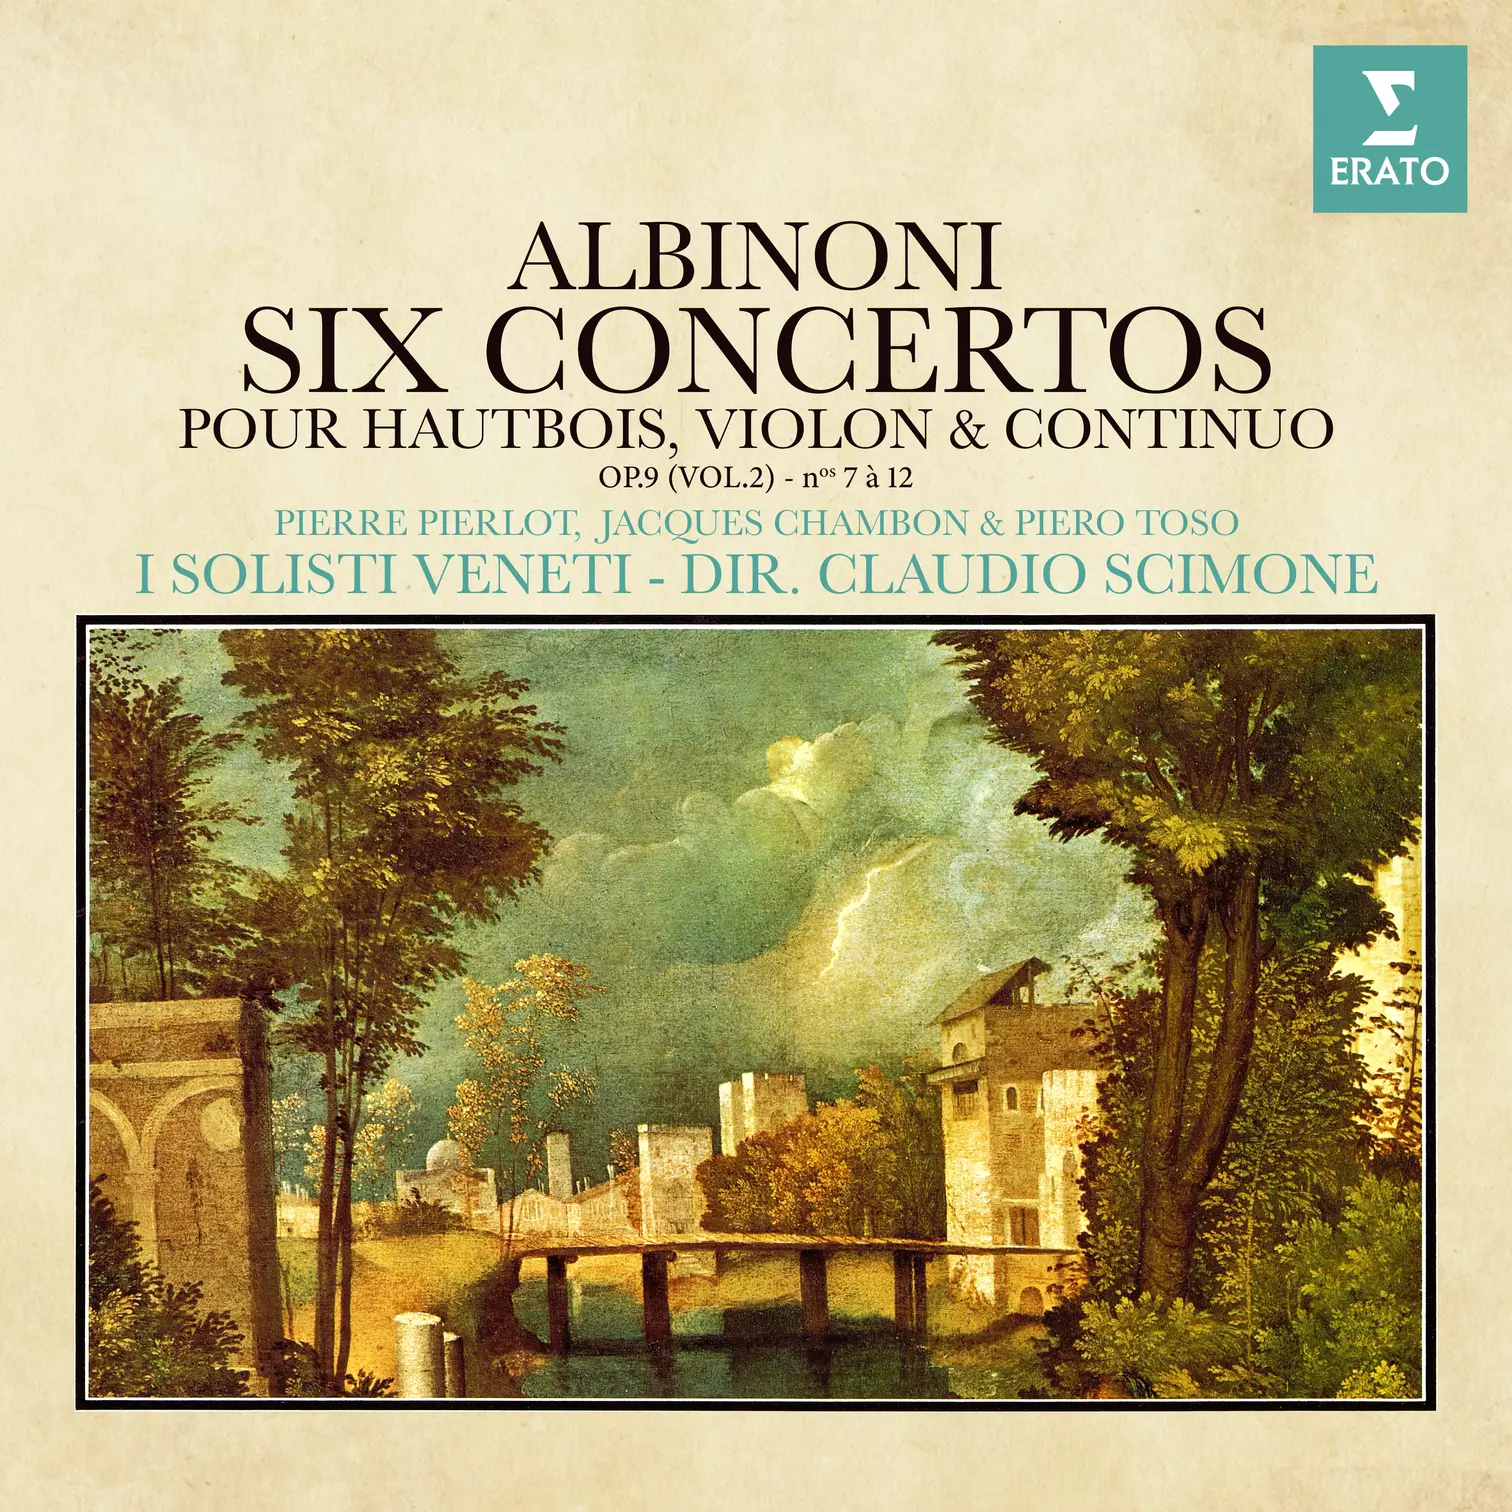 Albinoni: Concertos pour hautbois, violon et continuo, Op. 9 Nos. 7 - 12